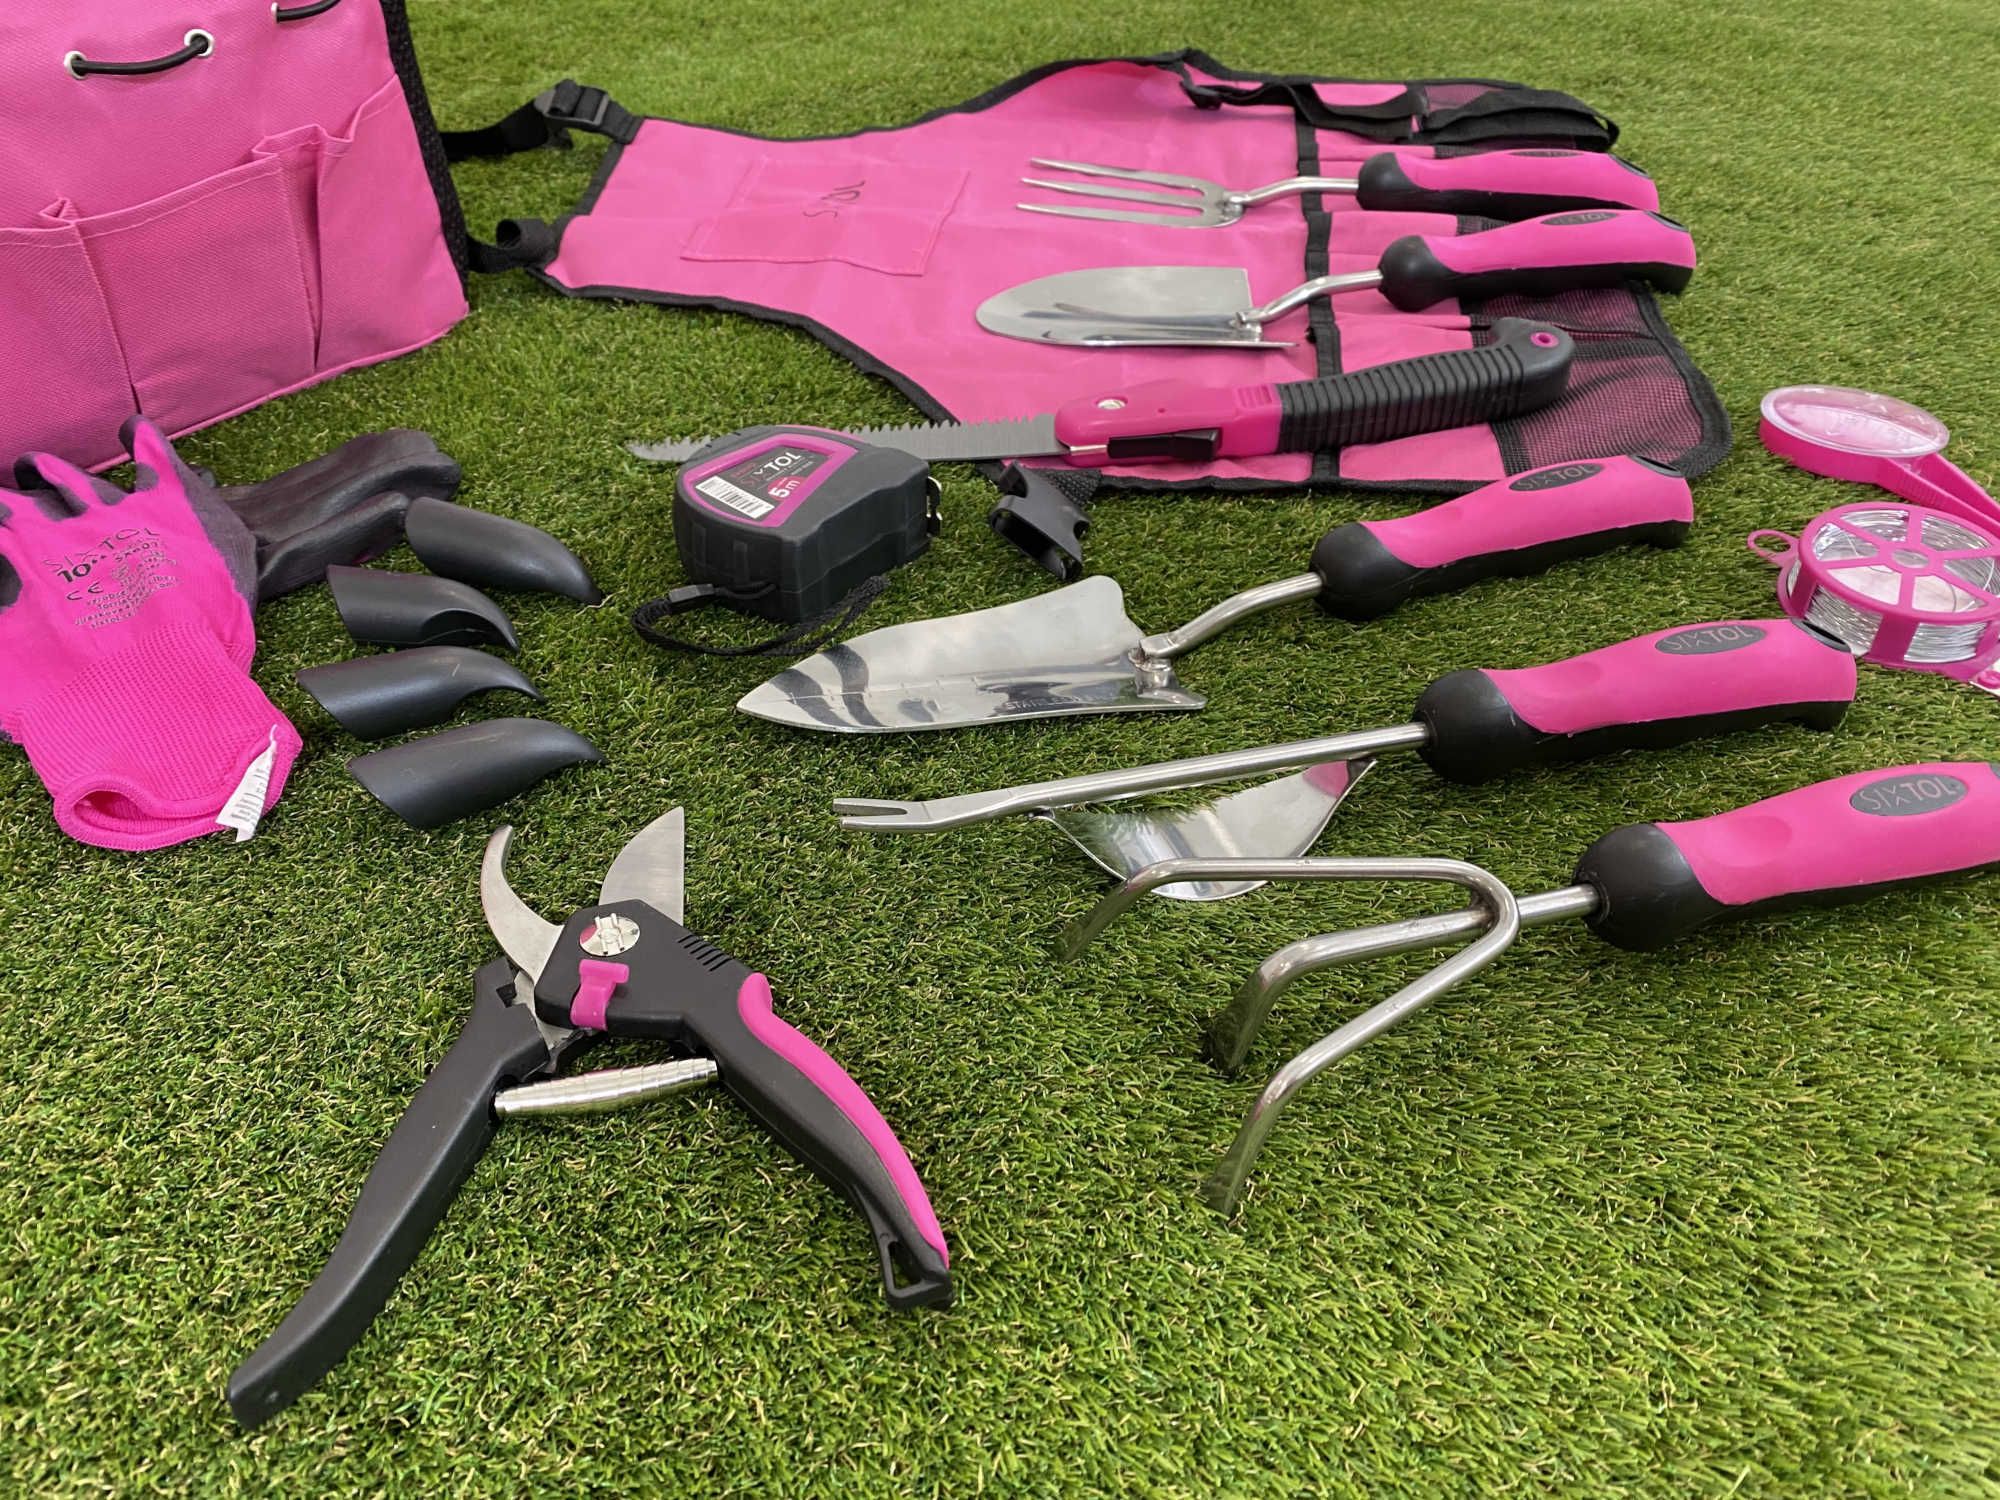 Sada zahradního nářadí Sixtol Garden Pink 12 rozložená na trávníku